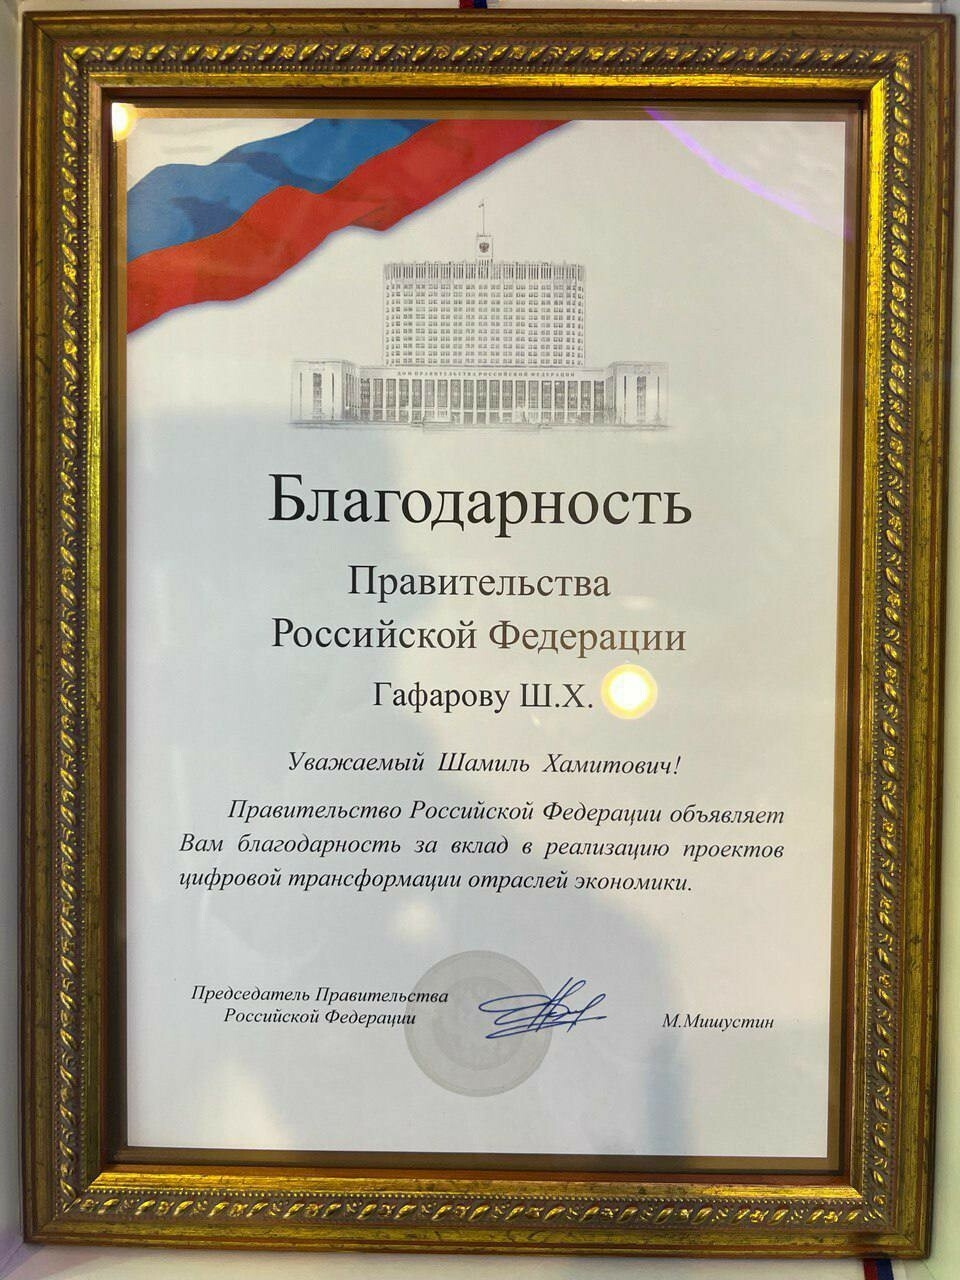 Чернышенко наградил Шамиля Гафарова за вклад в цифровизацию отраслей экономики РТ